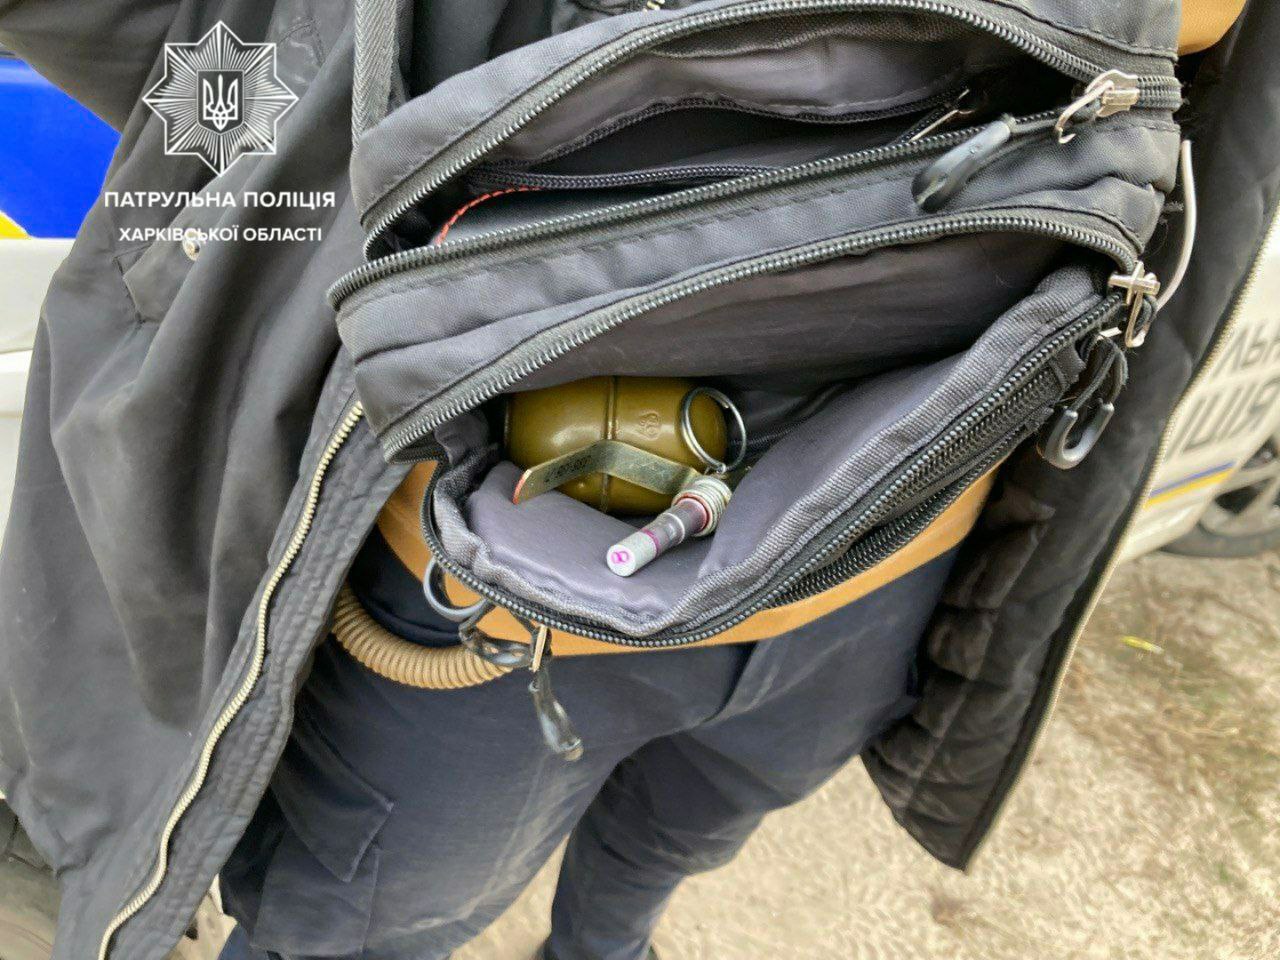 Криминал Харьков: Пытался сбежать от патрульных и был задержан мужчина с гранатой и наркотиками